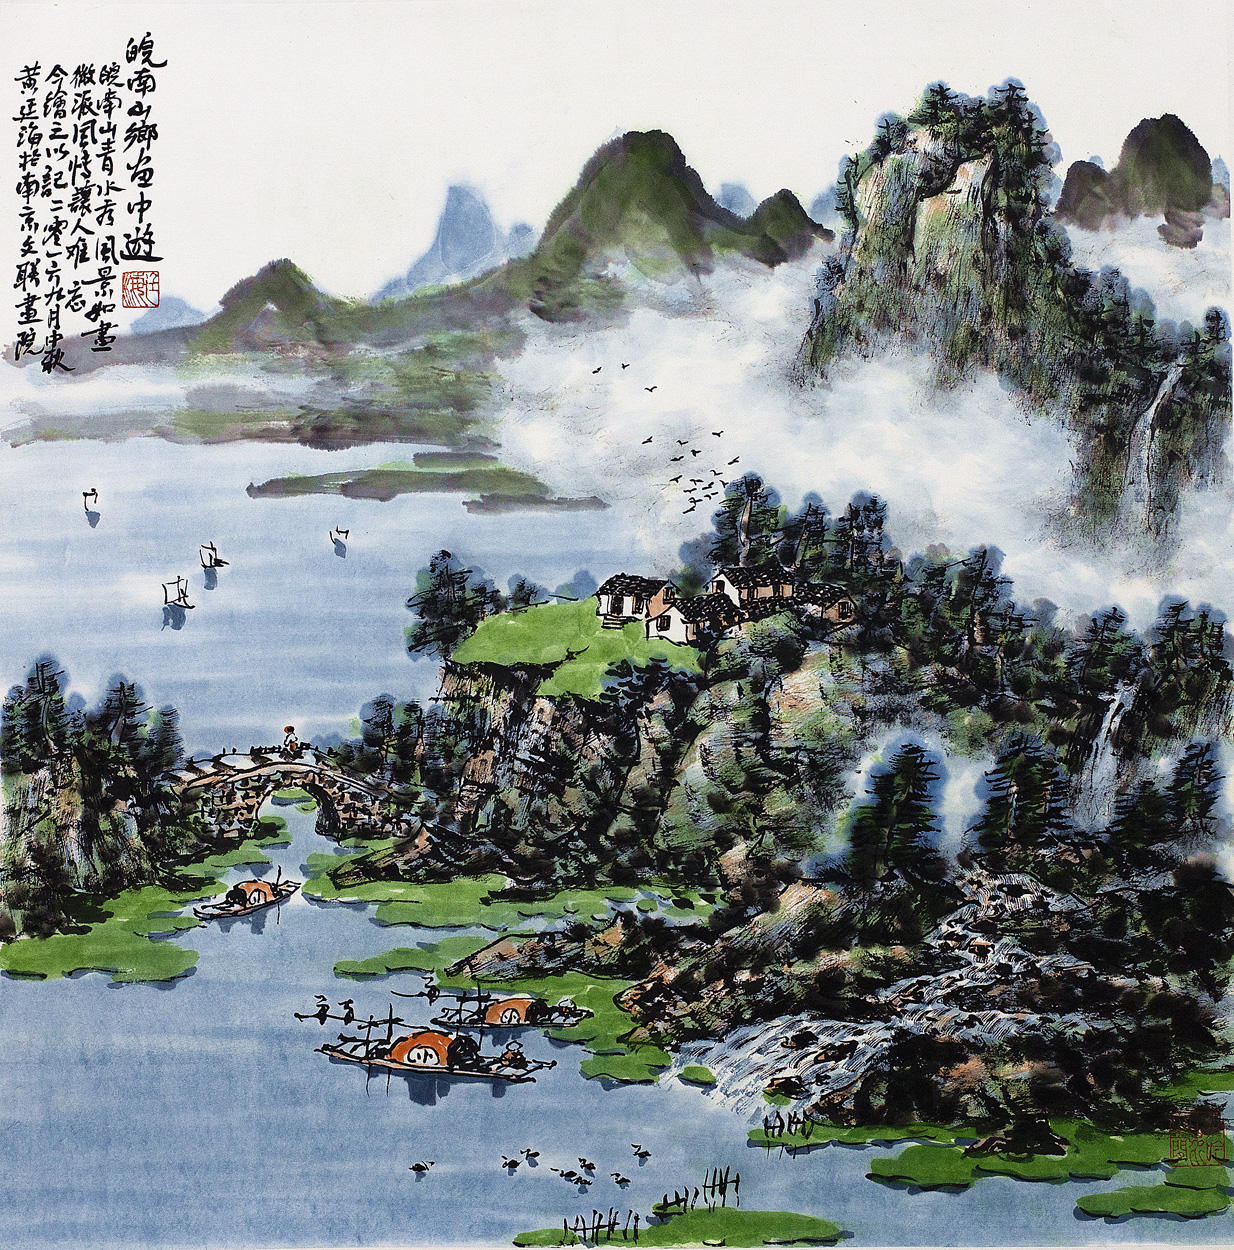 黄廷海——学术丰厚、画风独造的山水画大家